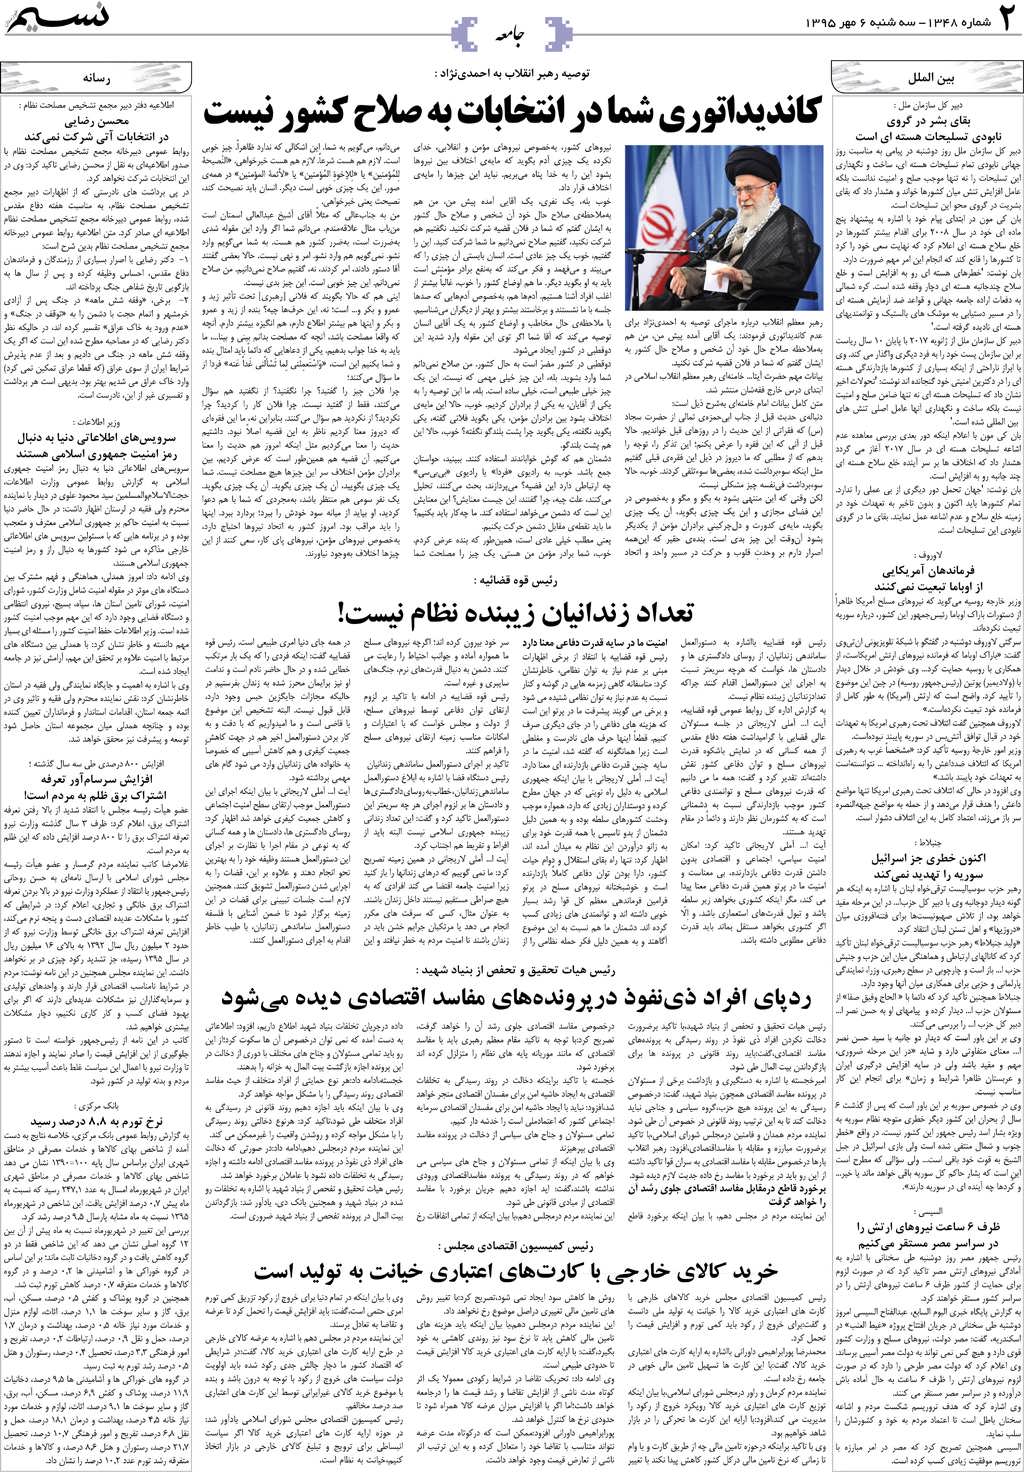 صفحه جامعه روزنامه نسیم شماره 1348